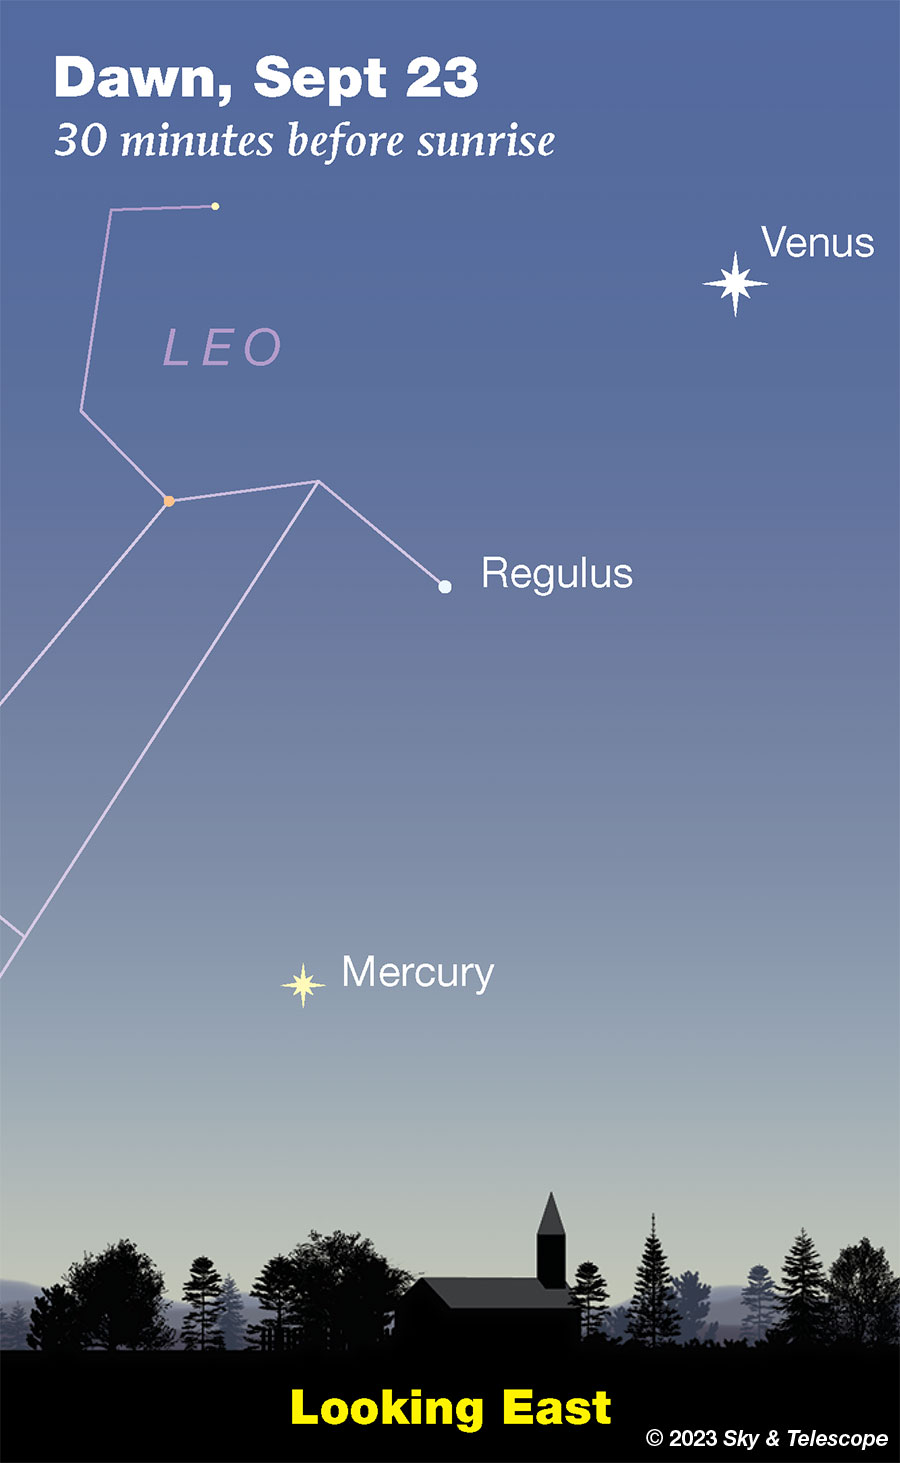 Venus, Regulus, and Mercury at dawn, Sept 23, 2023